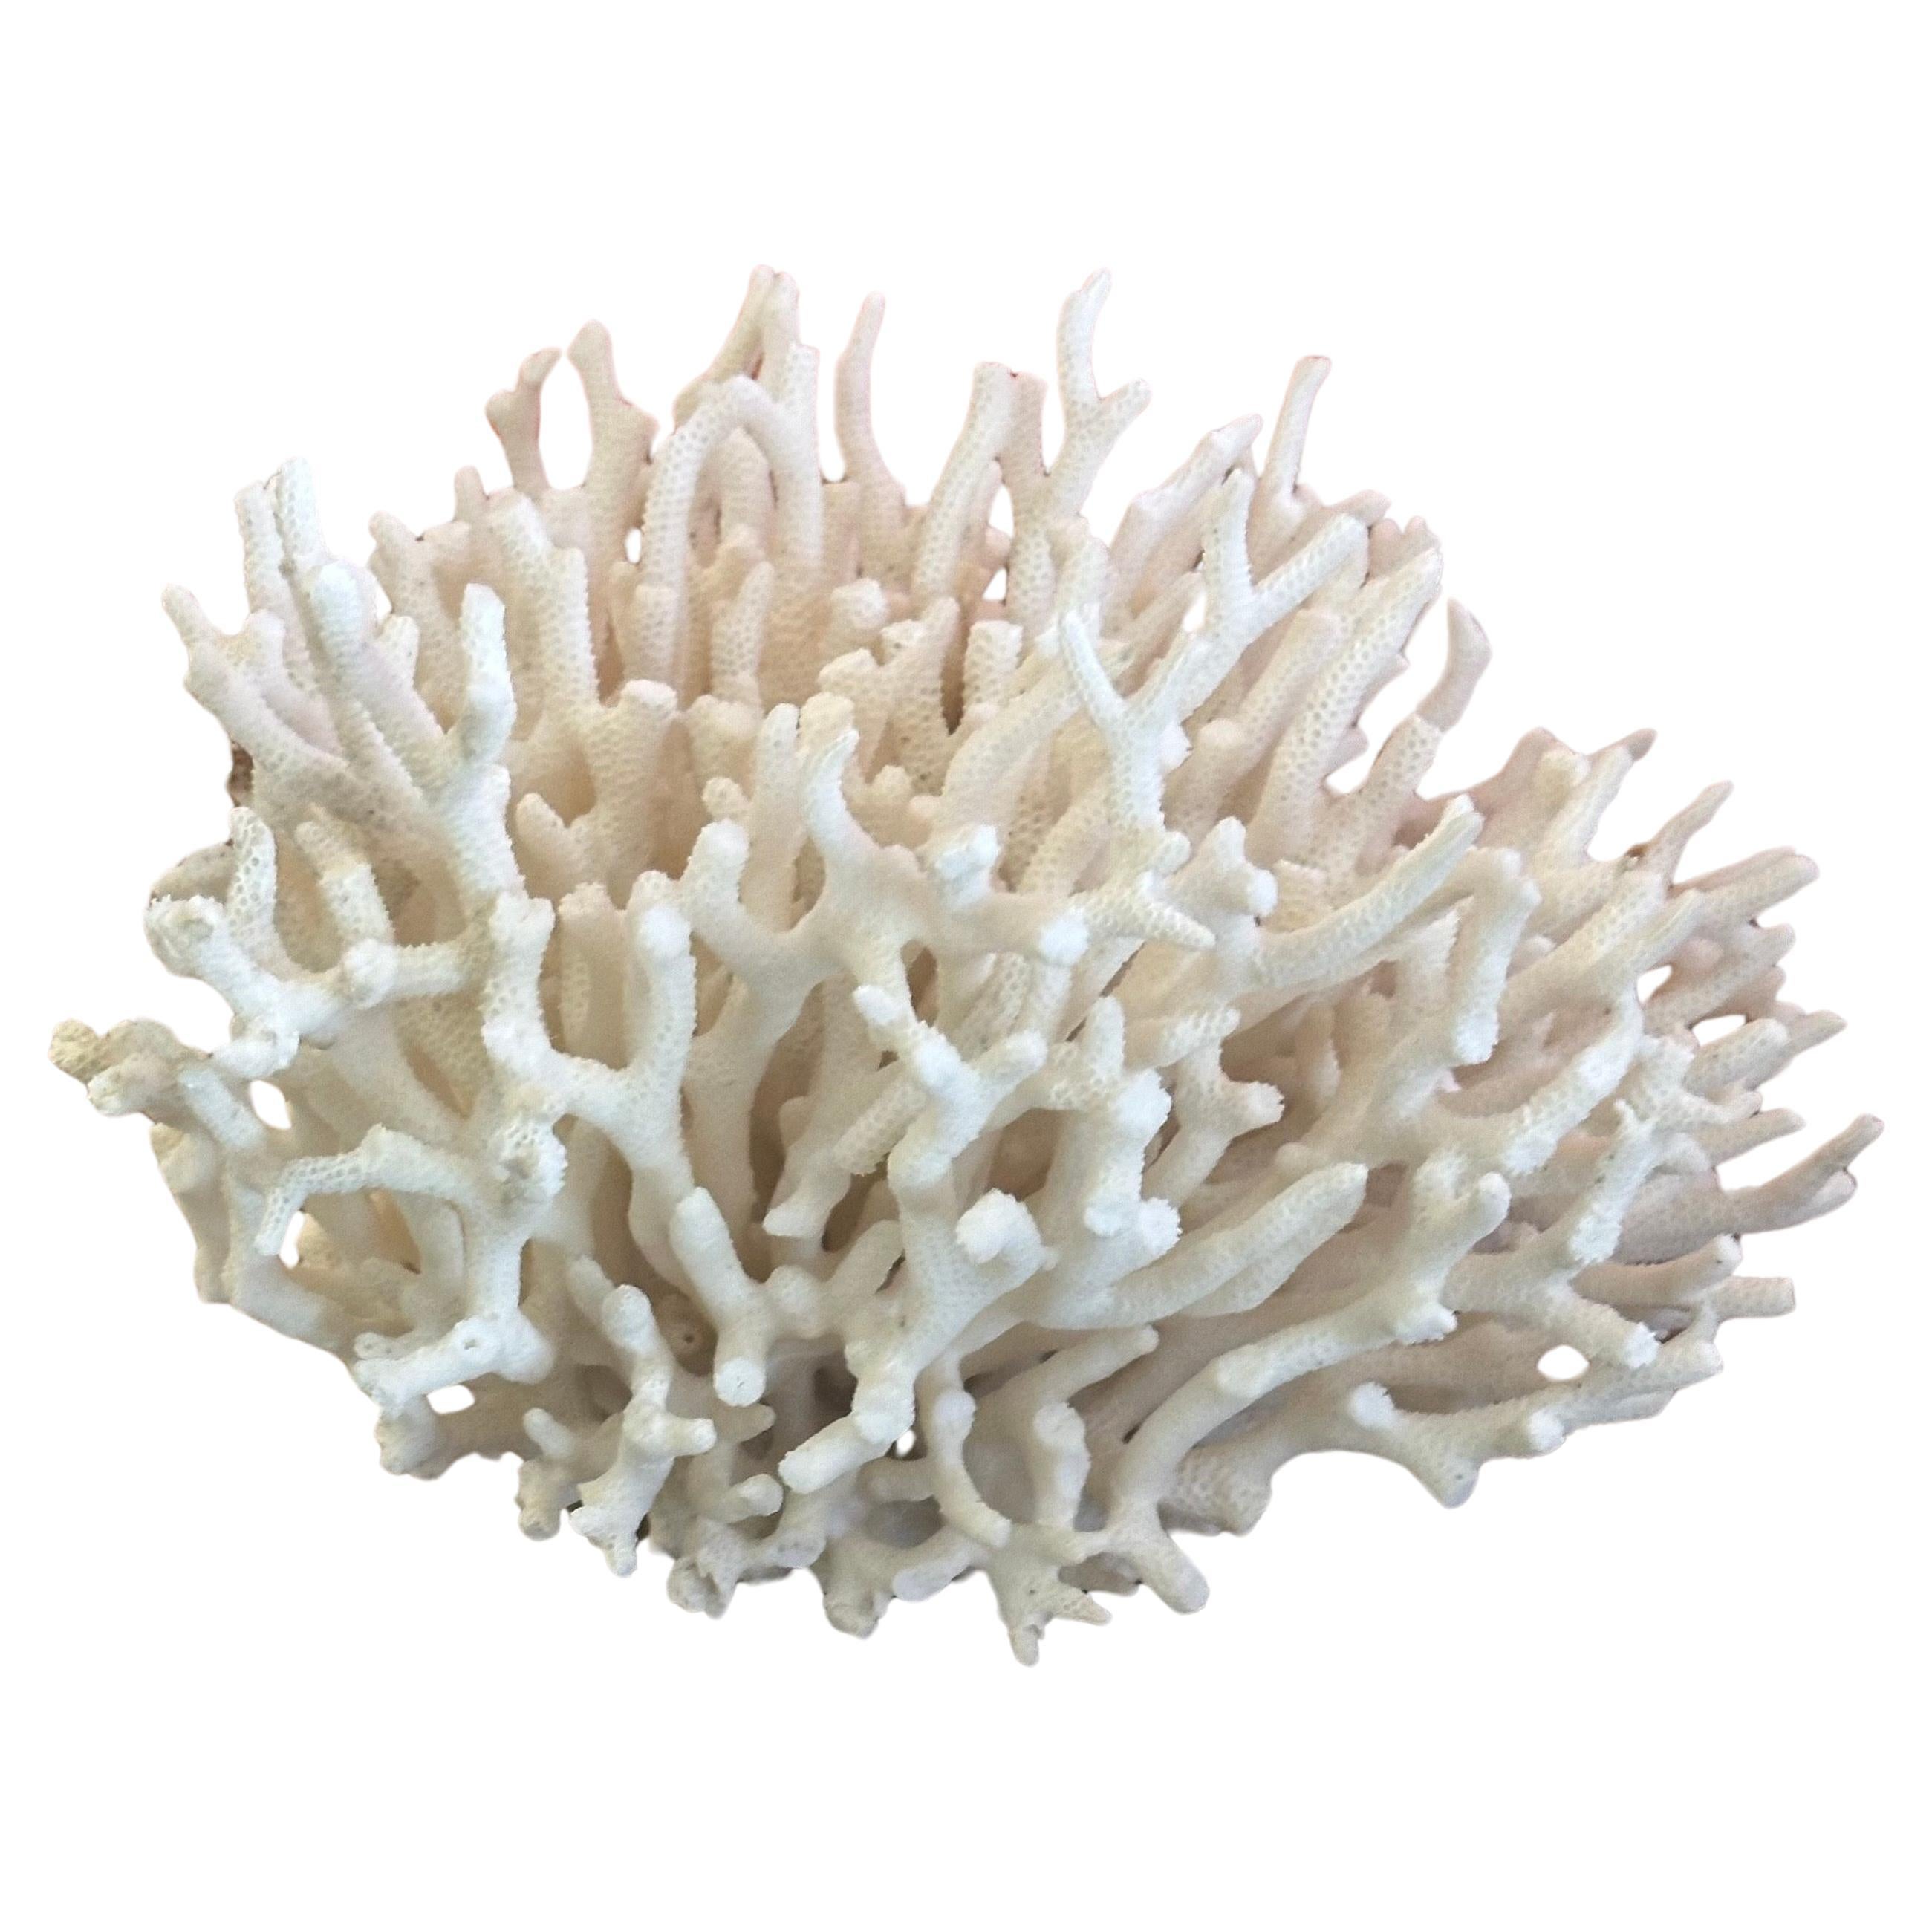 Natural White Sea Coral Specimen